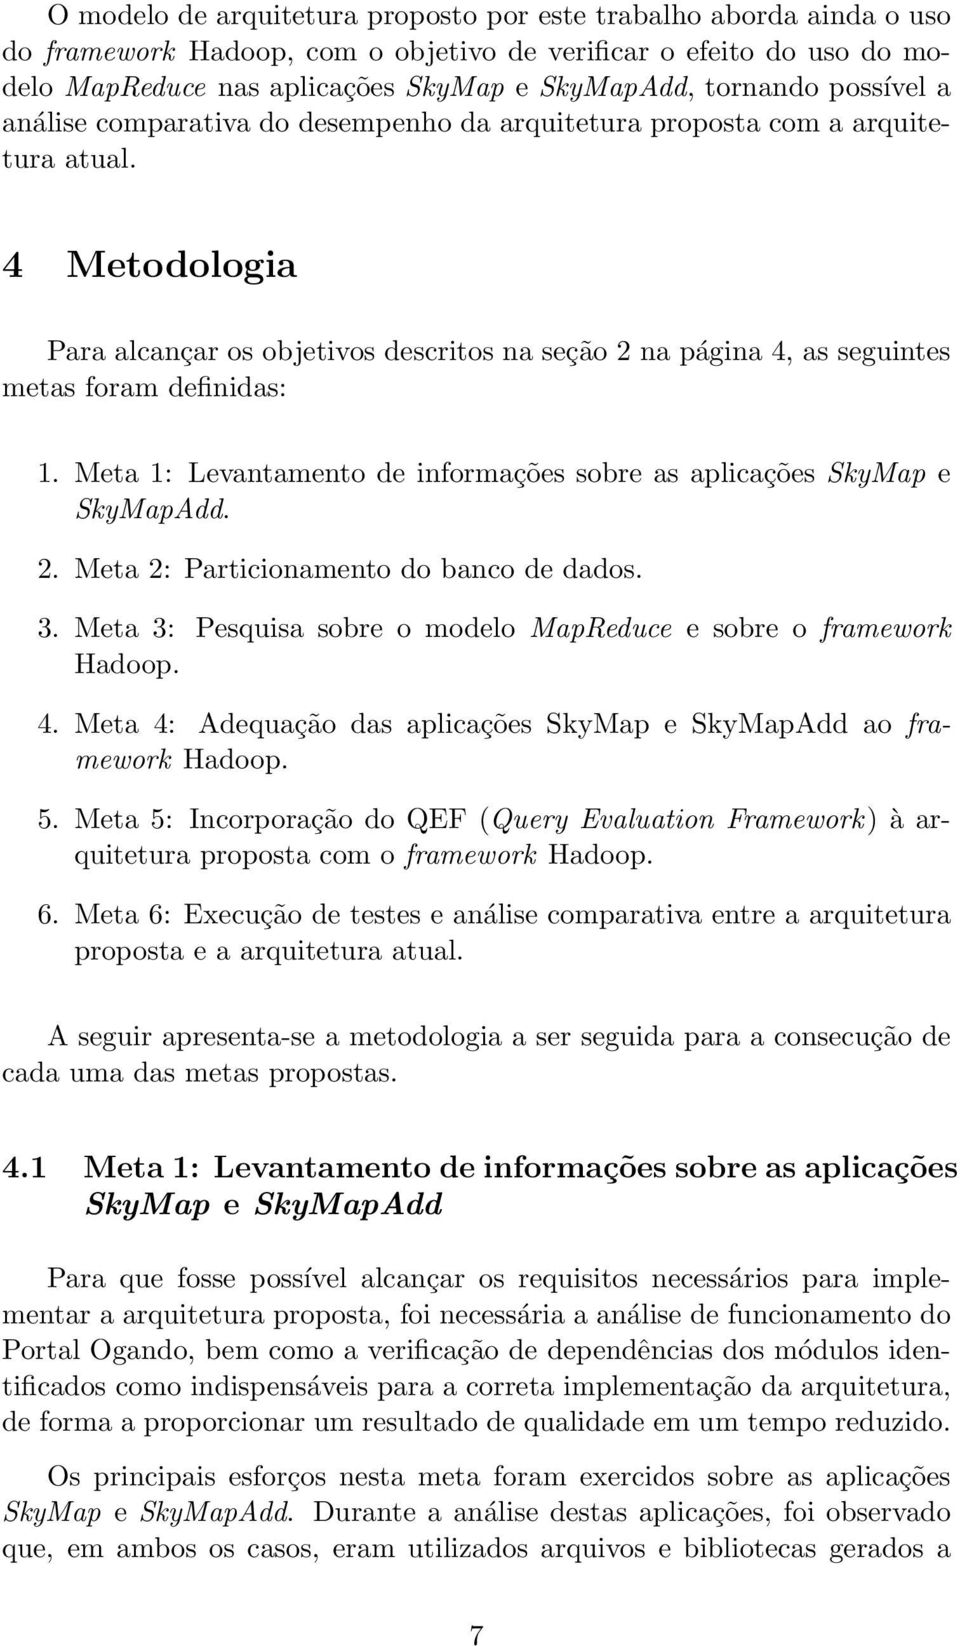 4 Metodologia Para alcançar os objetivos descritos na seção 2 na página 4, as seguintes metas foram definidas: 1. Meta 1: Levantamento de informações sobre as aplicações SkyMap e SkyMapAdd. 2. Meta 2: Particionamento do banco de dados.